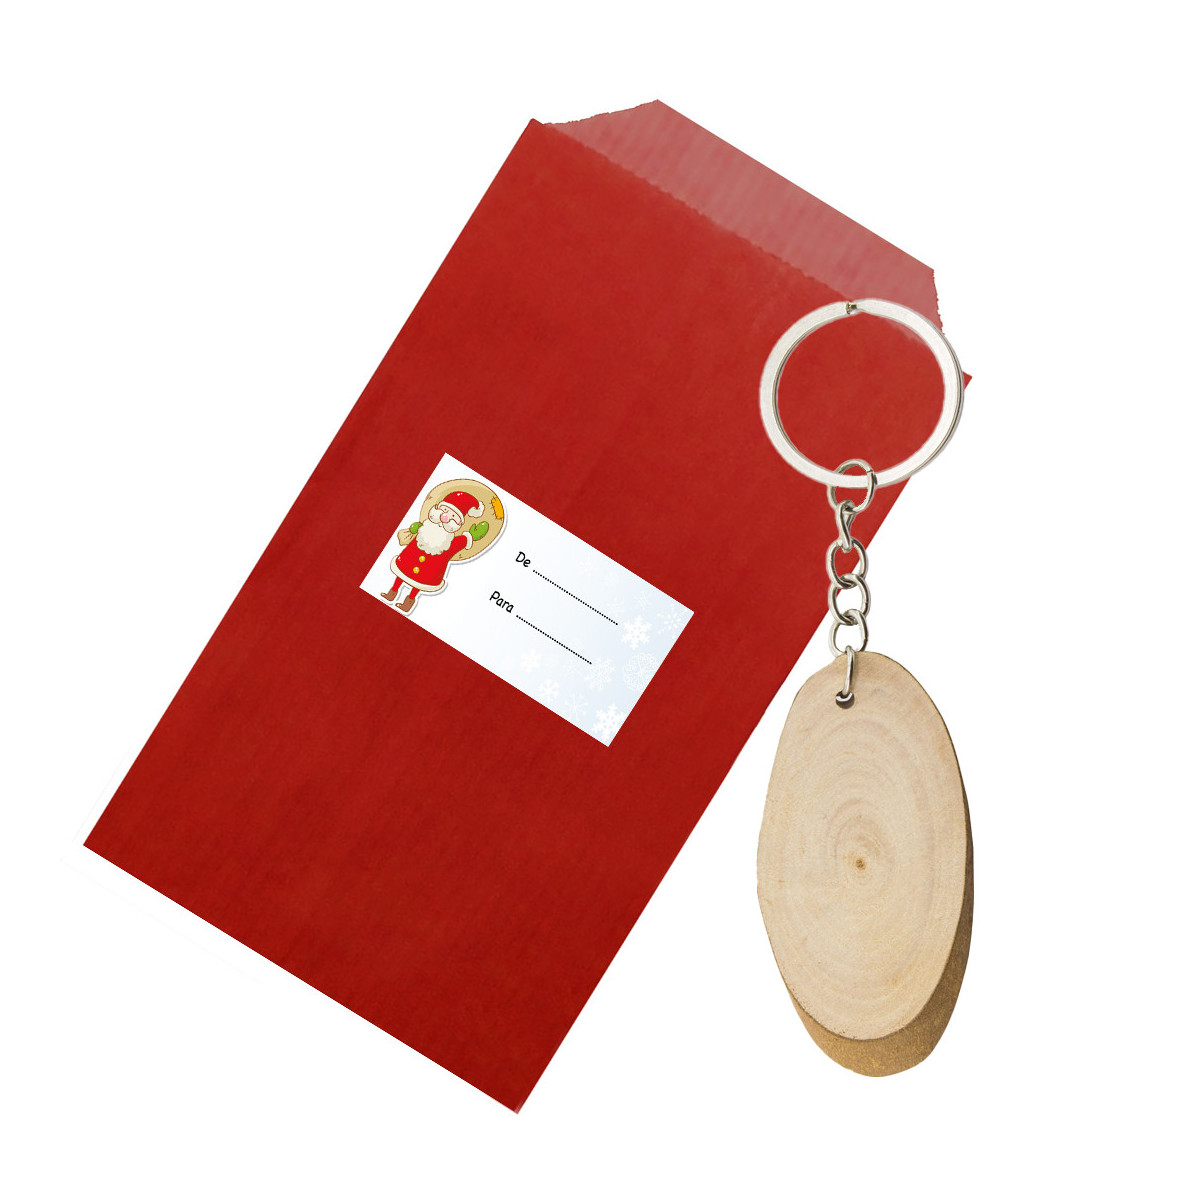 Portachiavi con tronco di legno presentato in busta kraft rossa con adesivo per natale